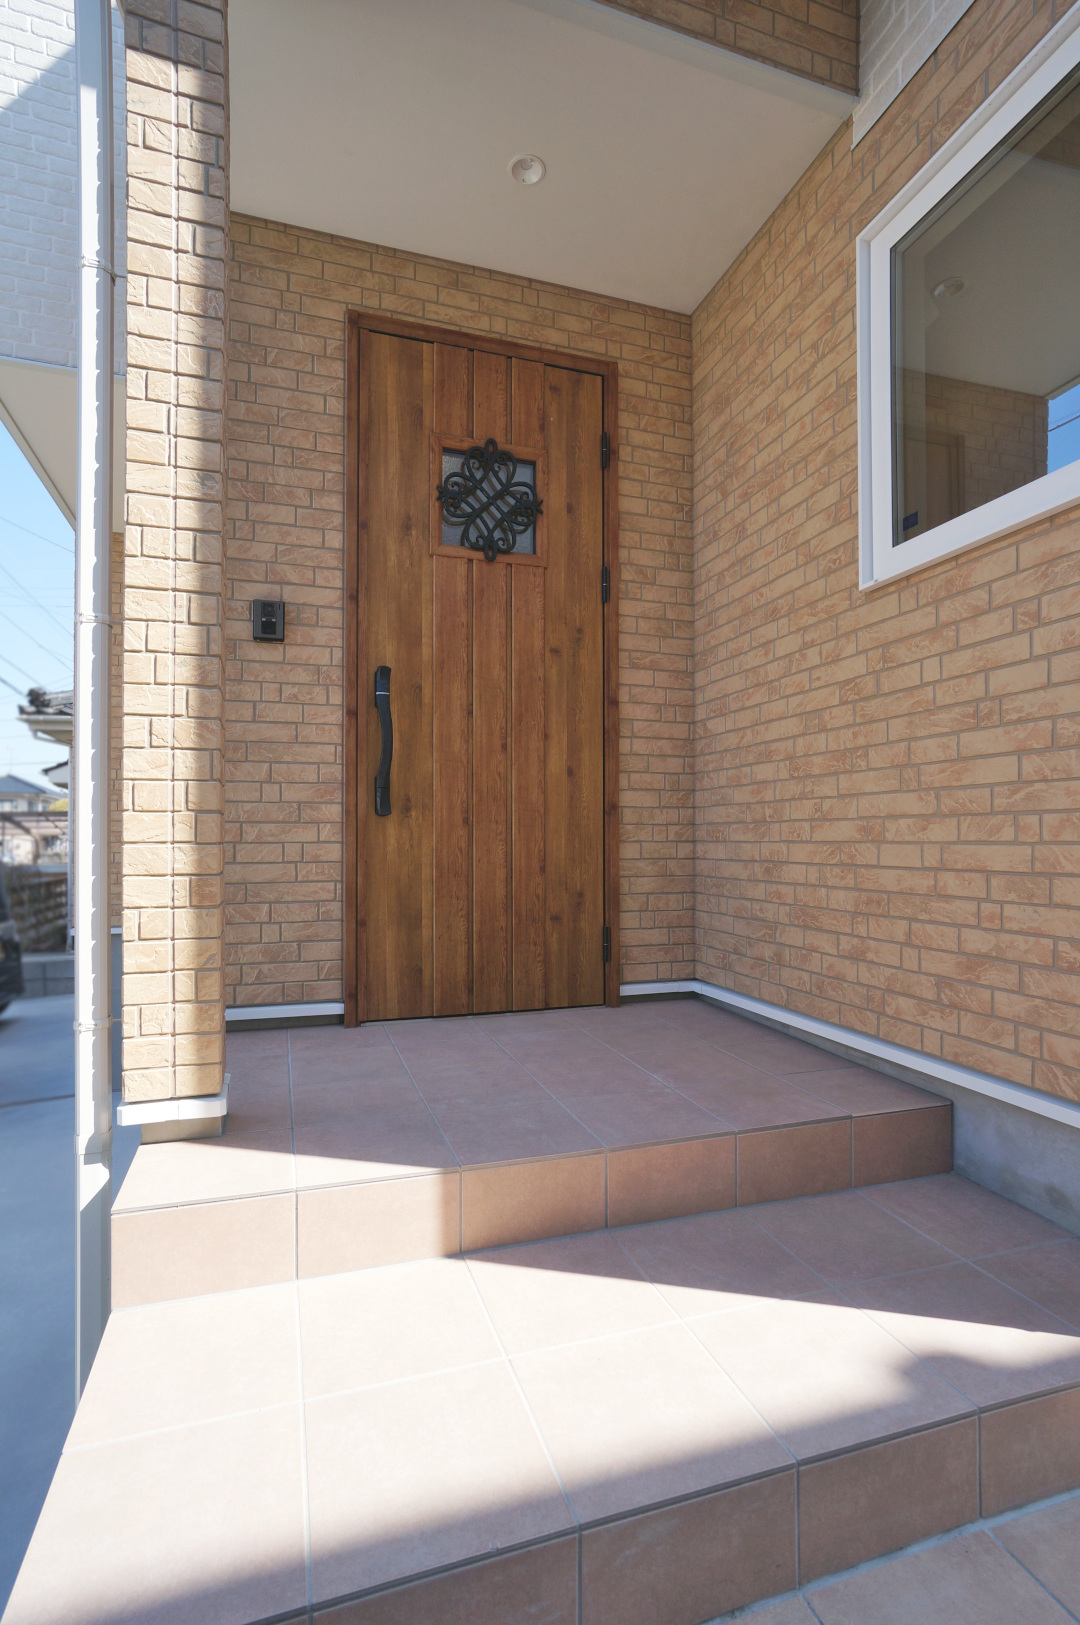 テラコッタ色の玄関タイルとマキアートパインの木目がおしゃれな玄関ドア。カフェ入口のようですね♩